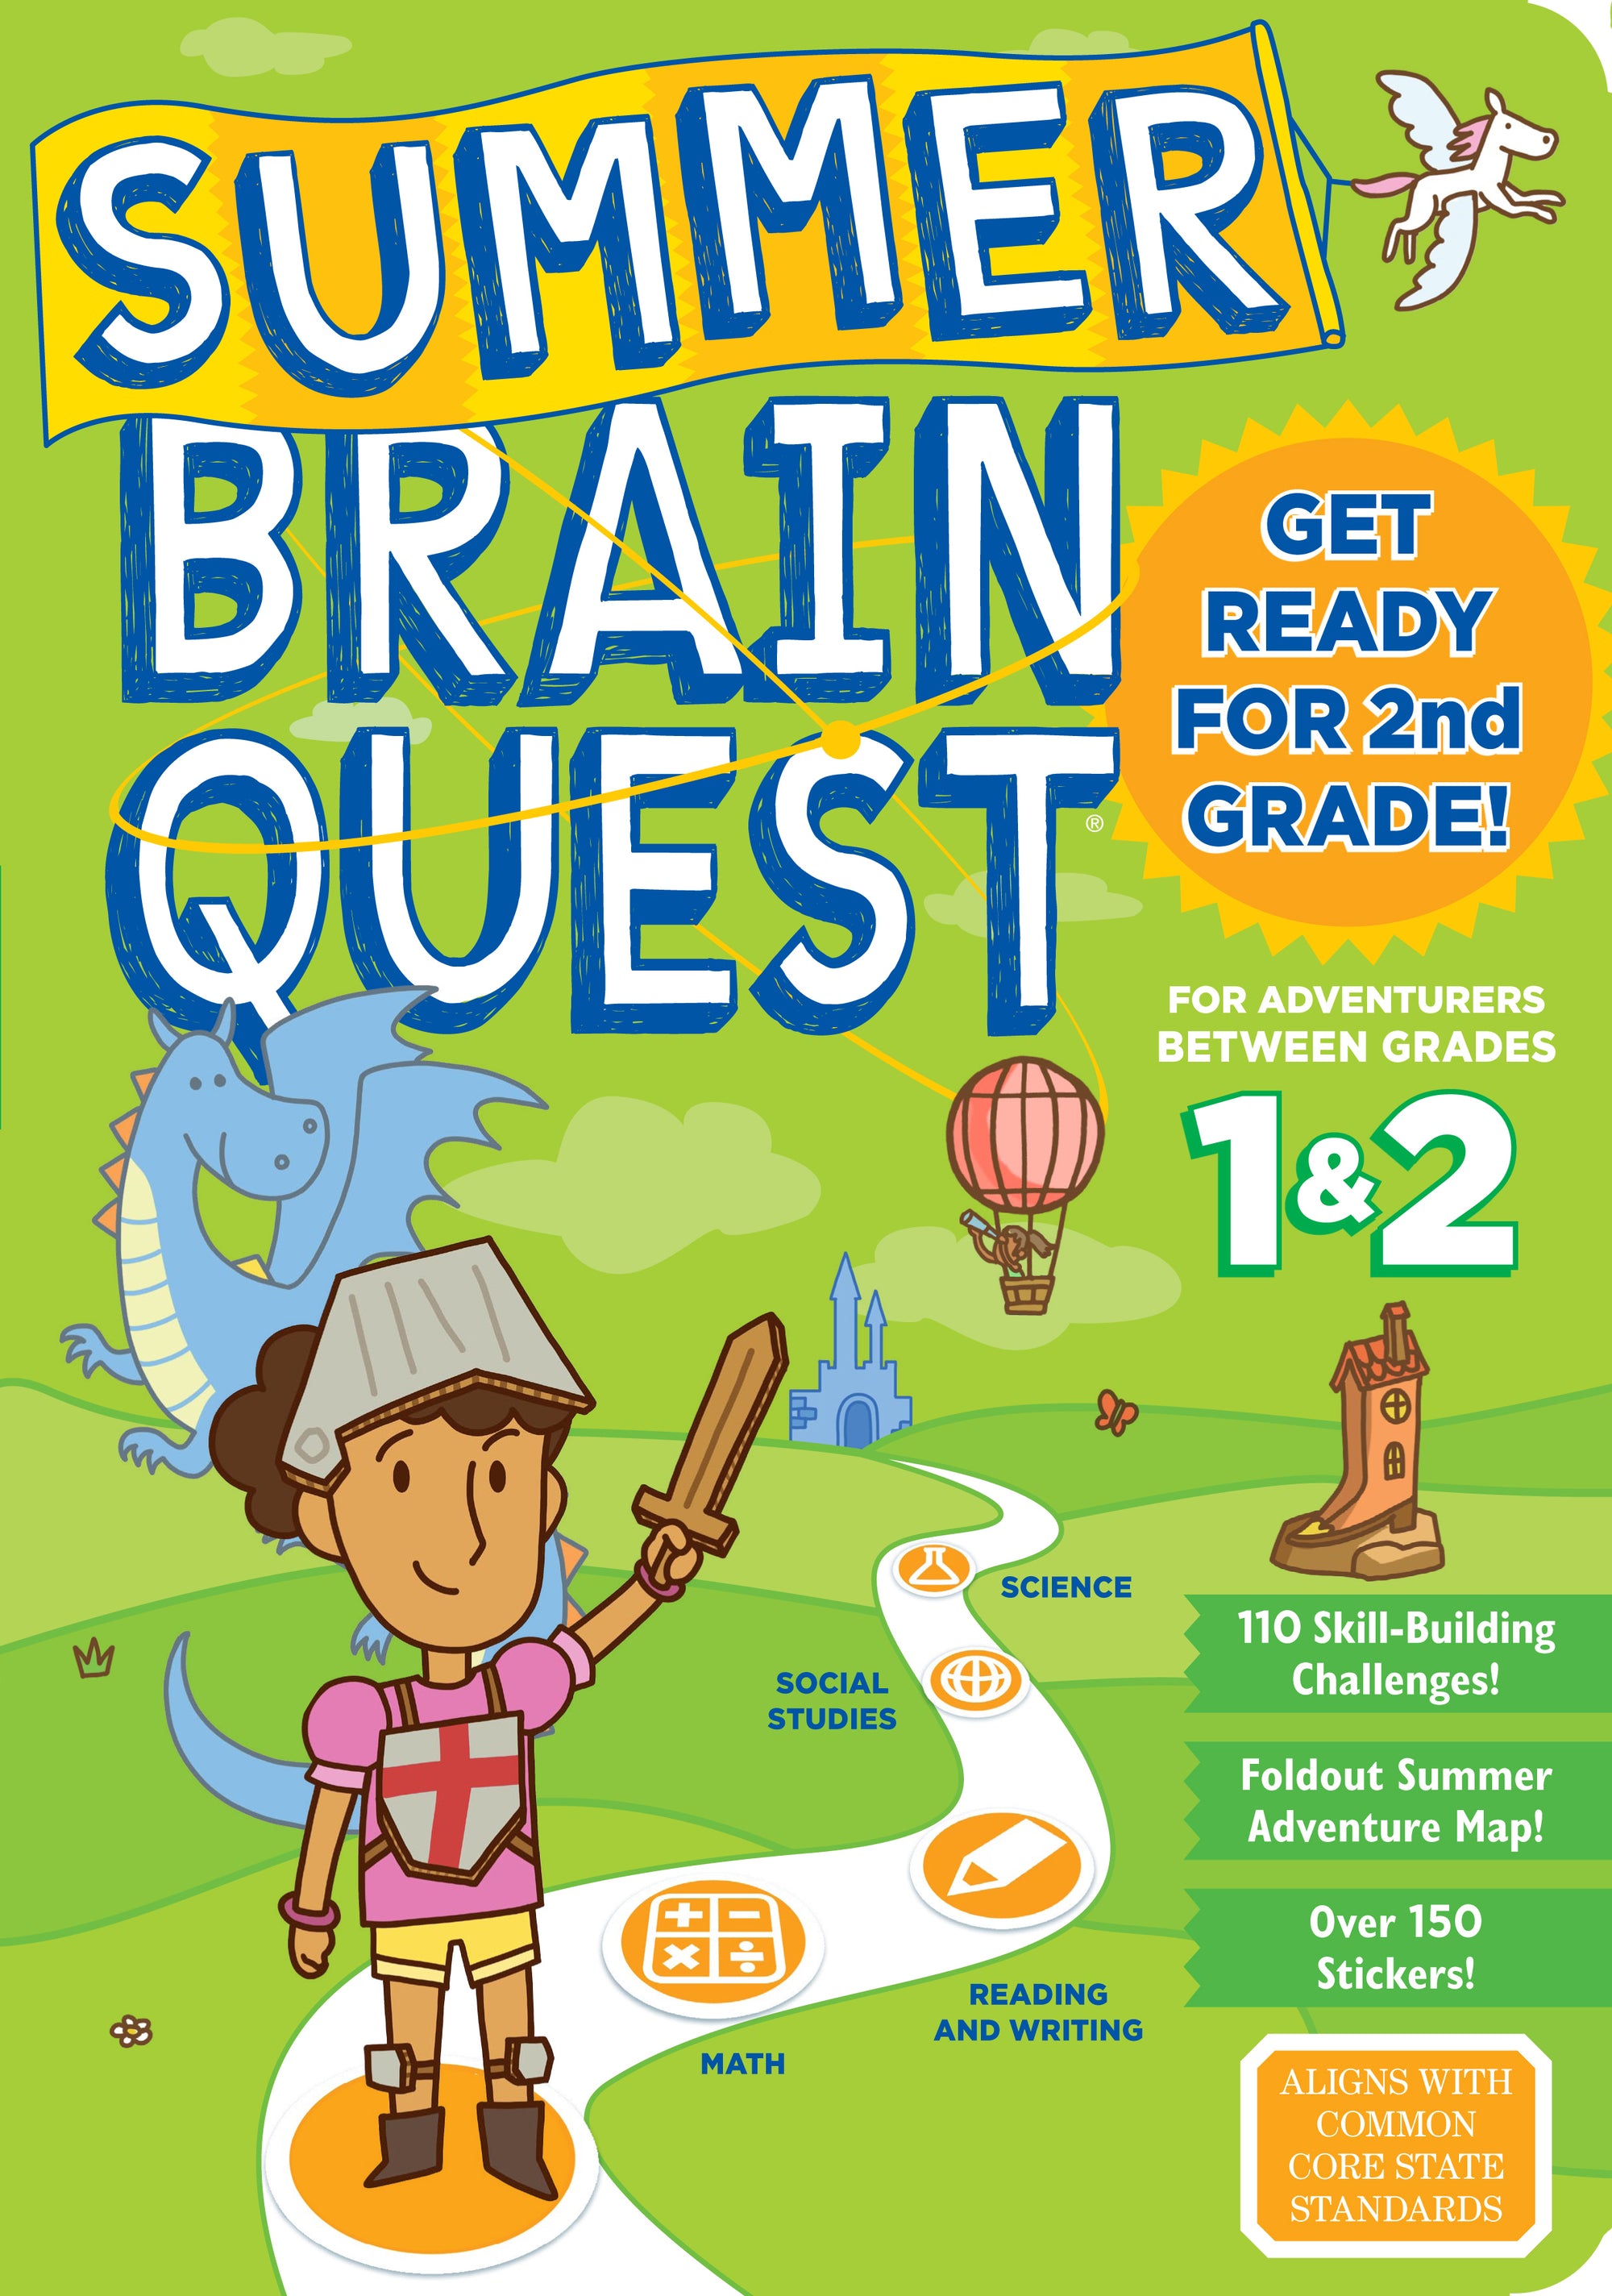 Brain Quest Summer Brain Quest: Between Grades 1 & 2